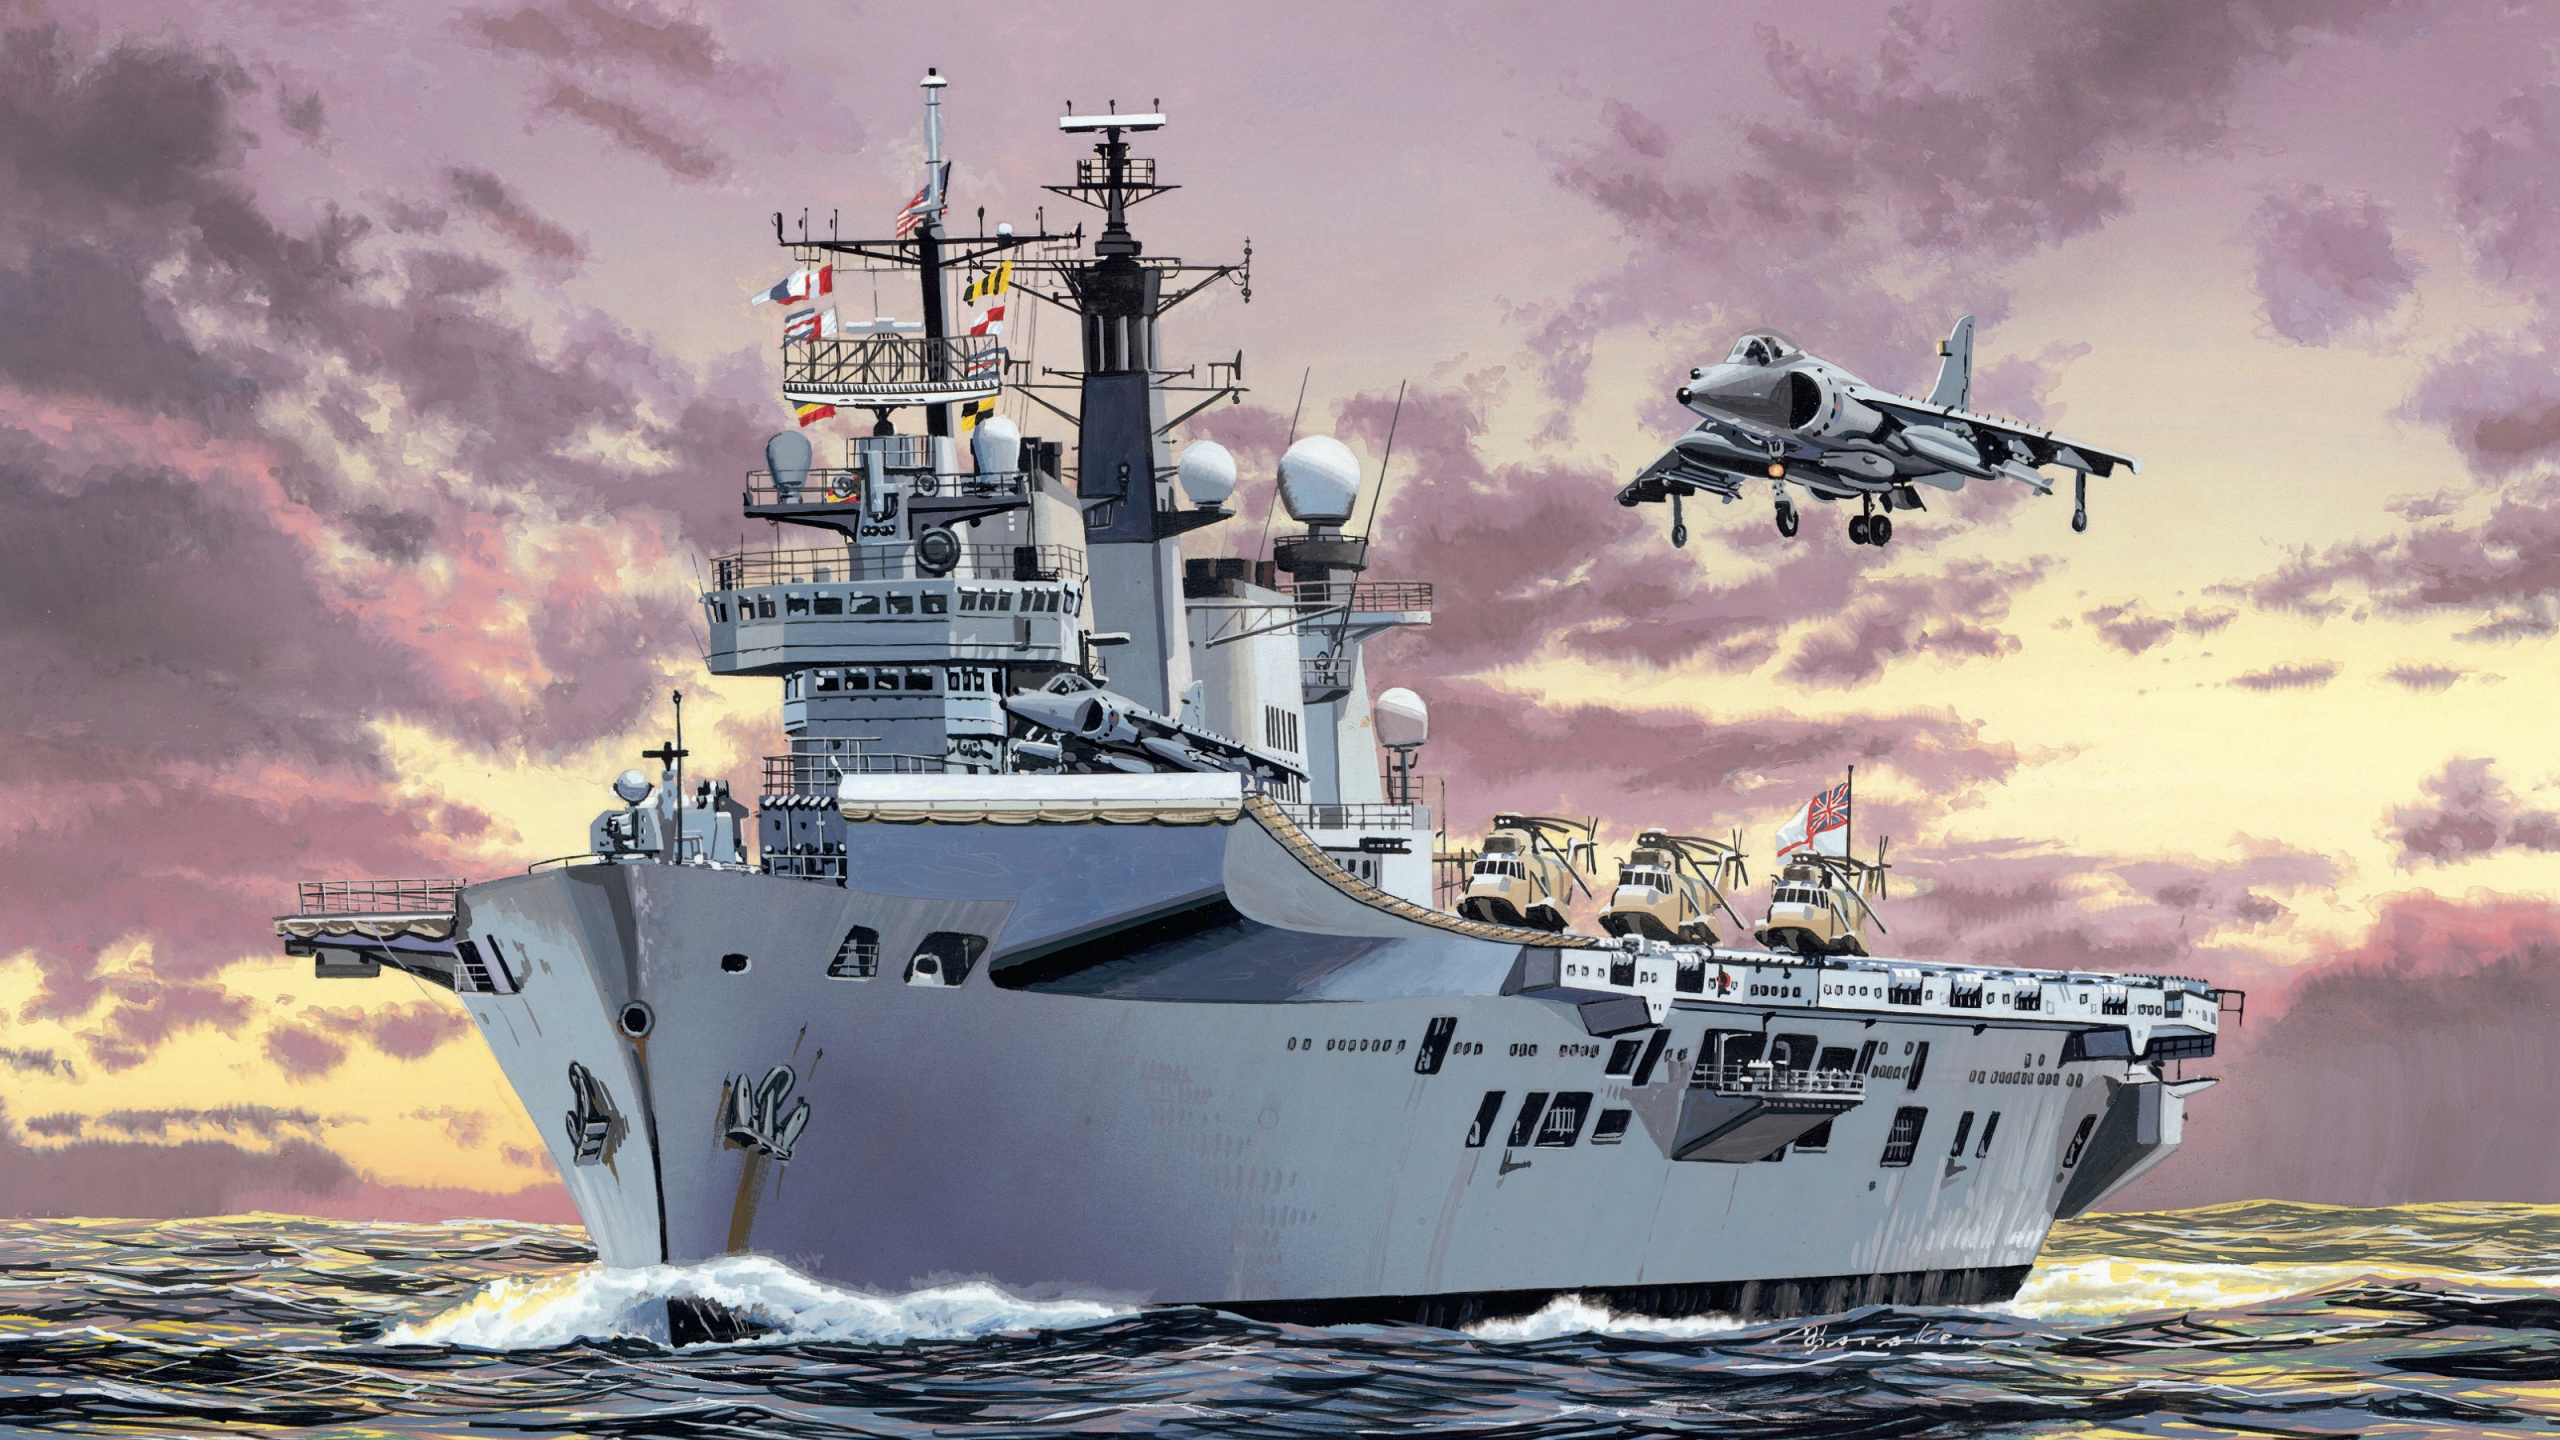 HMS Ark Royal, Marina Real, Portaaviones, Buque de Guerra de La, Naval. Wallpaper in 2560x1440 Resolution